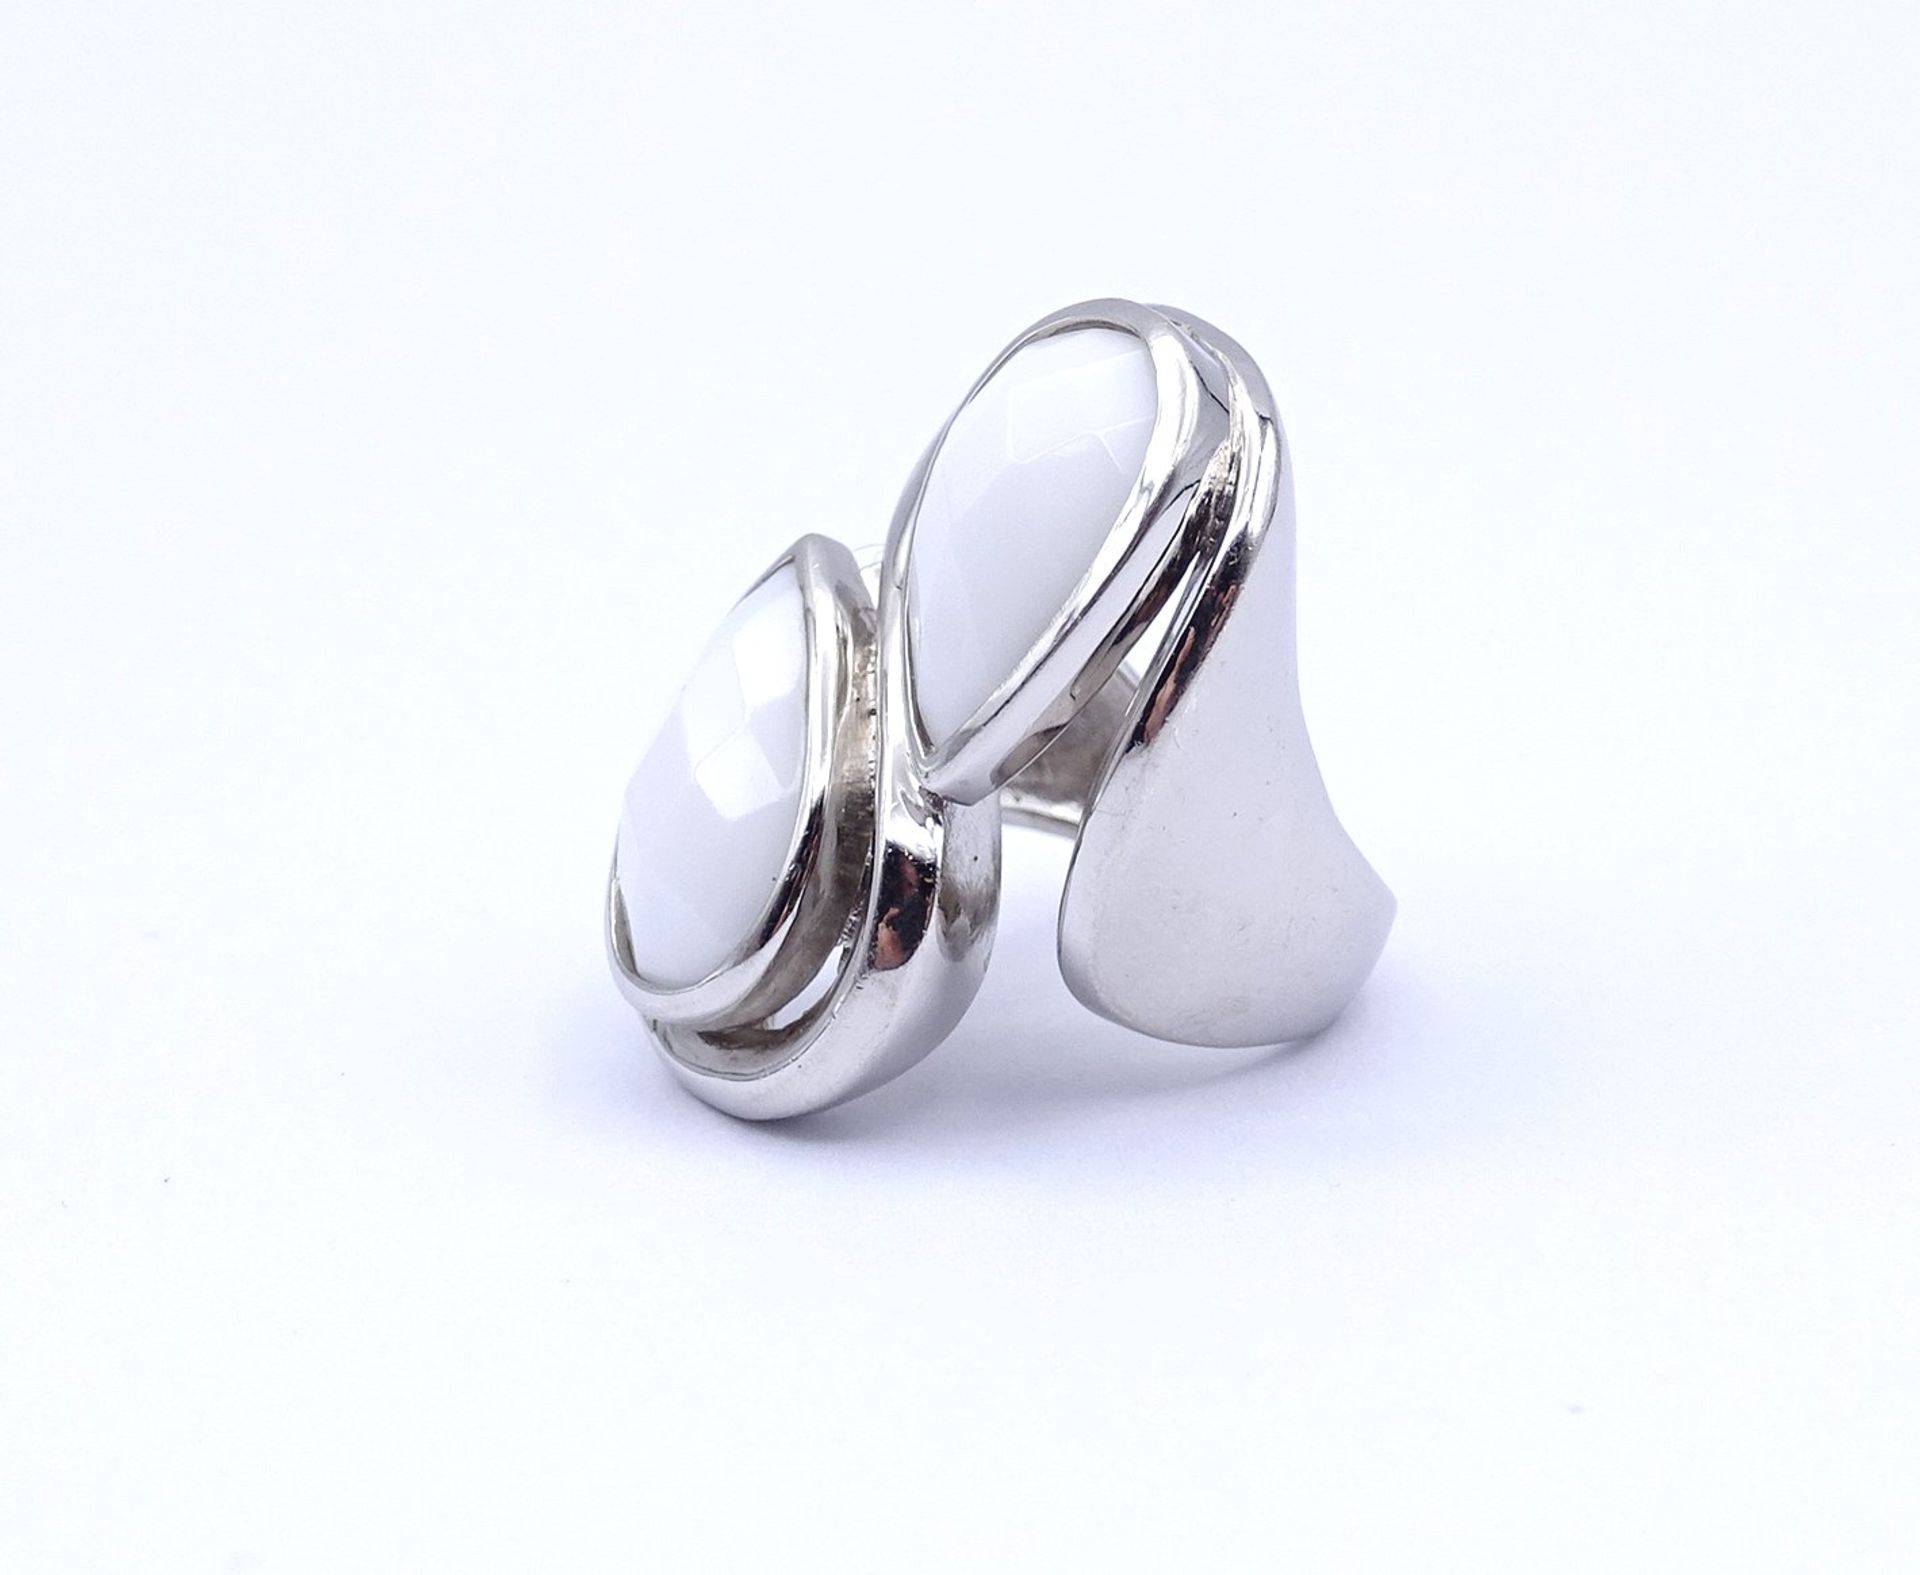 925er Silber Ring mit 2 weißen facc. Steinen, 15,8g., RG 52 - Image 3 of 4